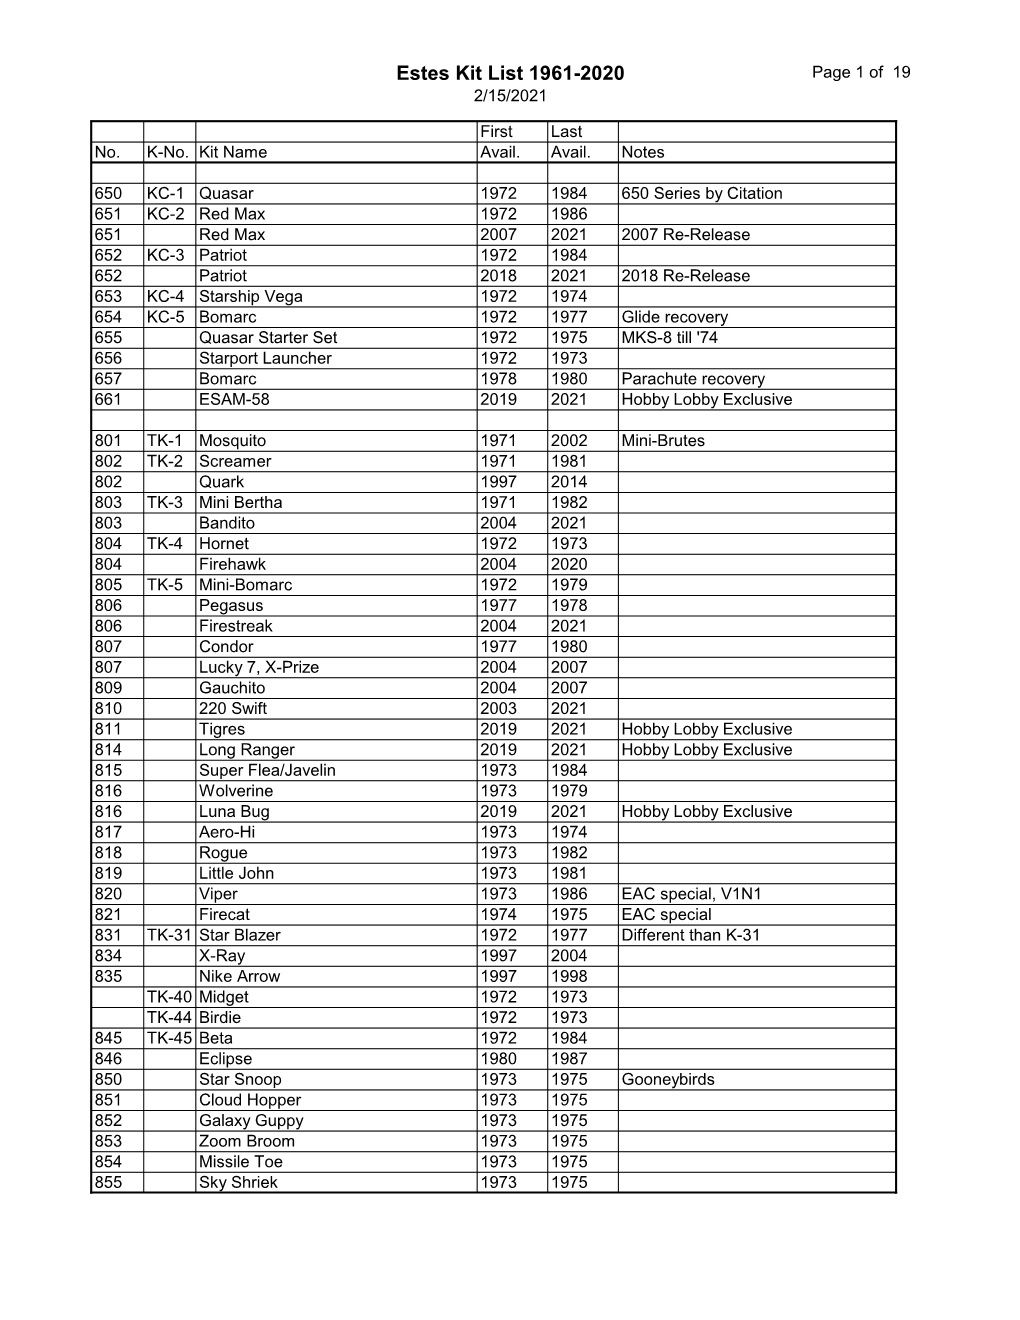 Estes Kit List 1961-2020 Page 1 of 19 2/15/2021